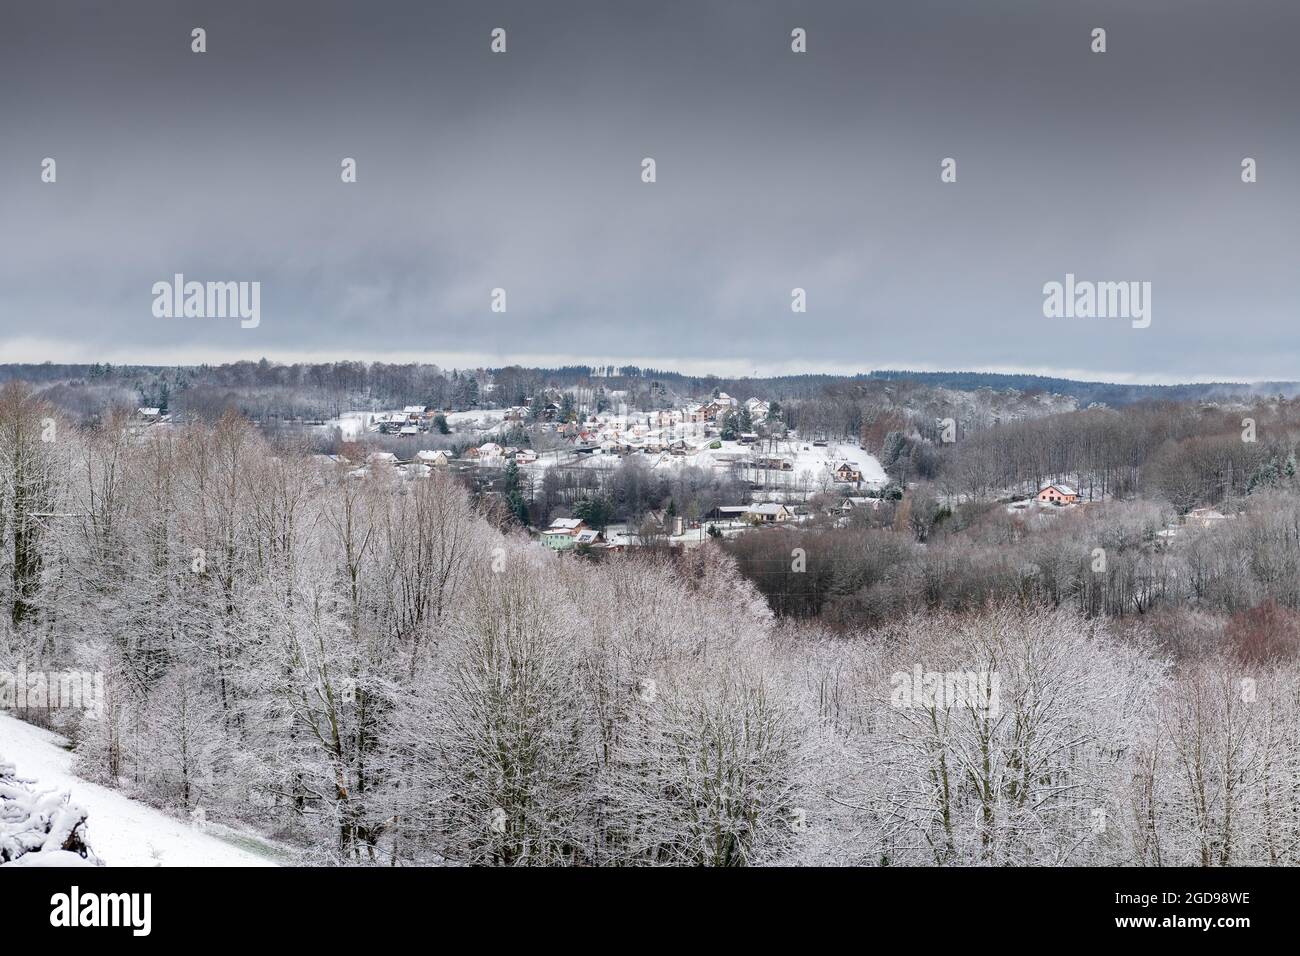 Village de Meisenthal sous la neige, France, Grand-est Stock Photo